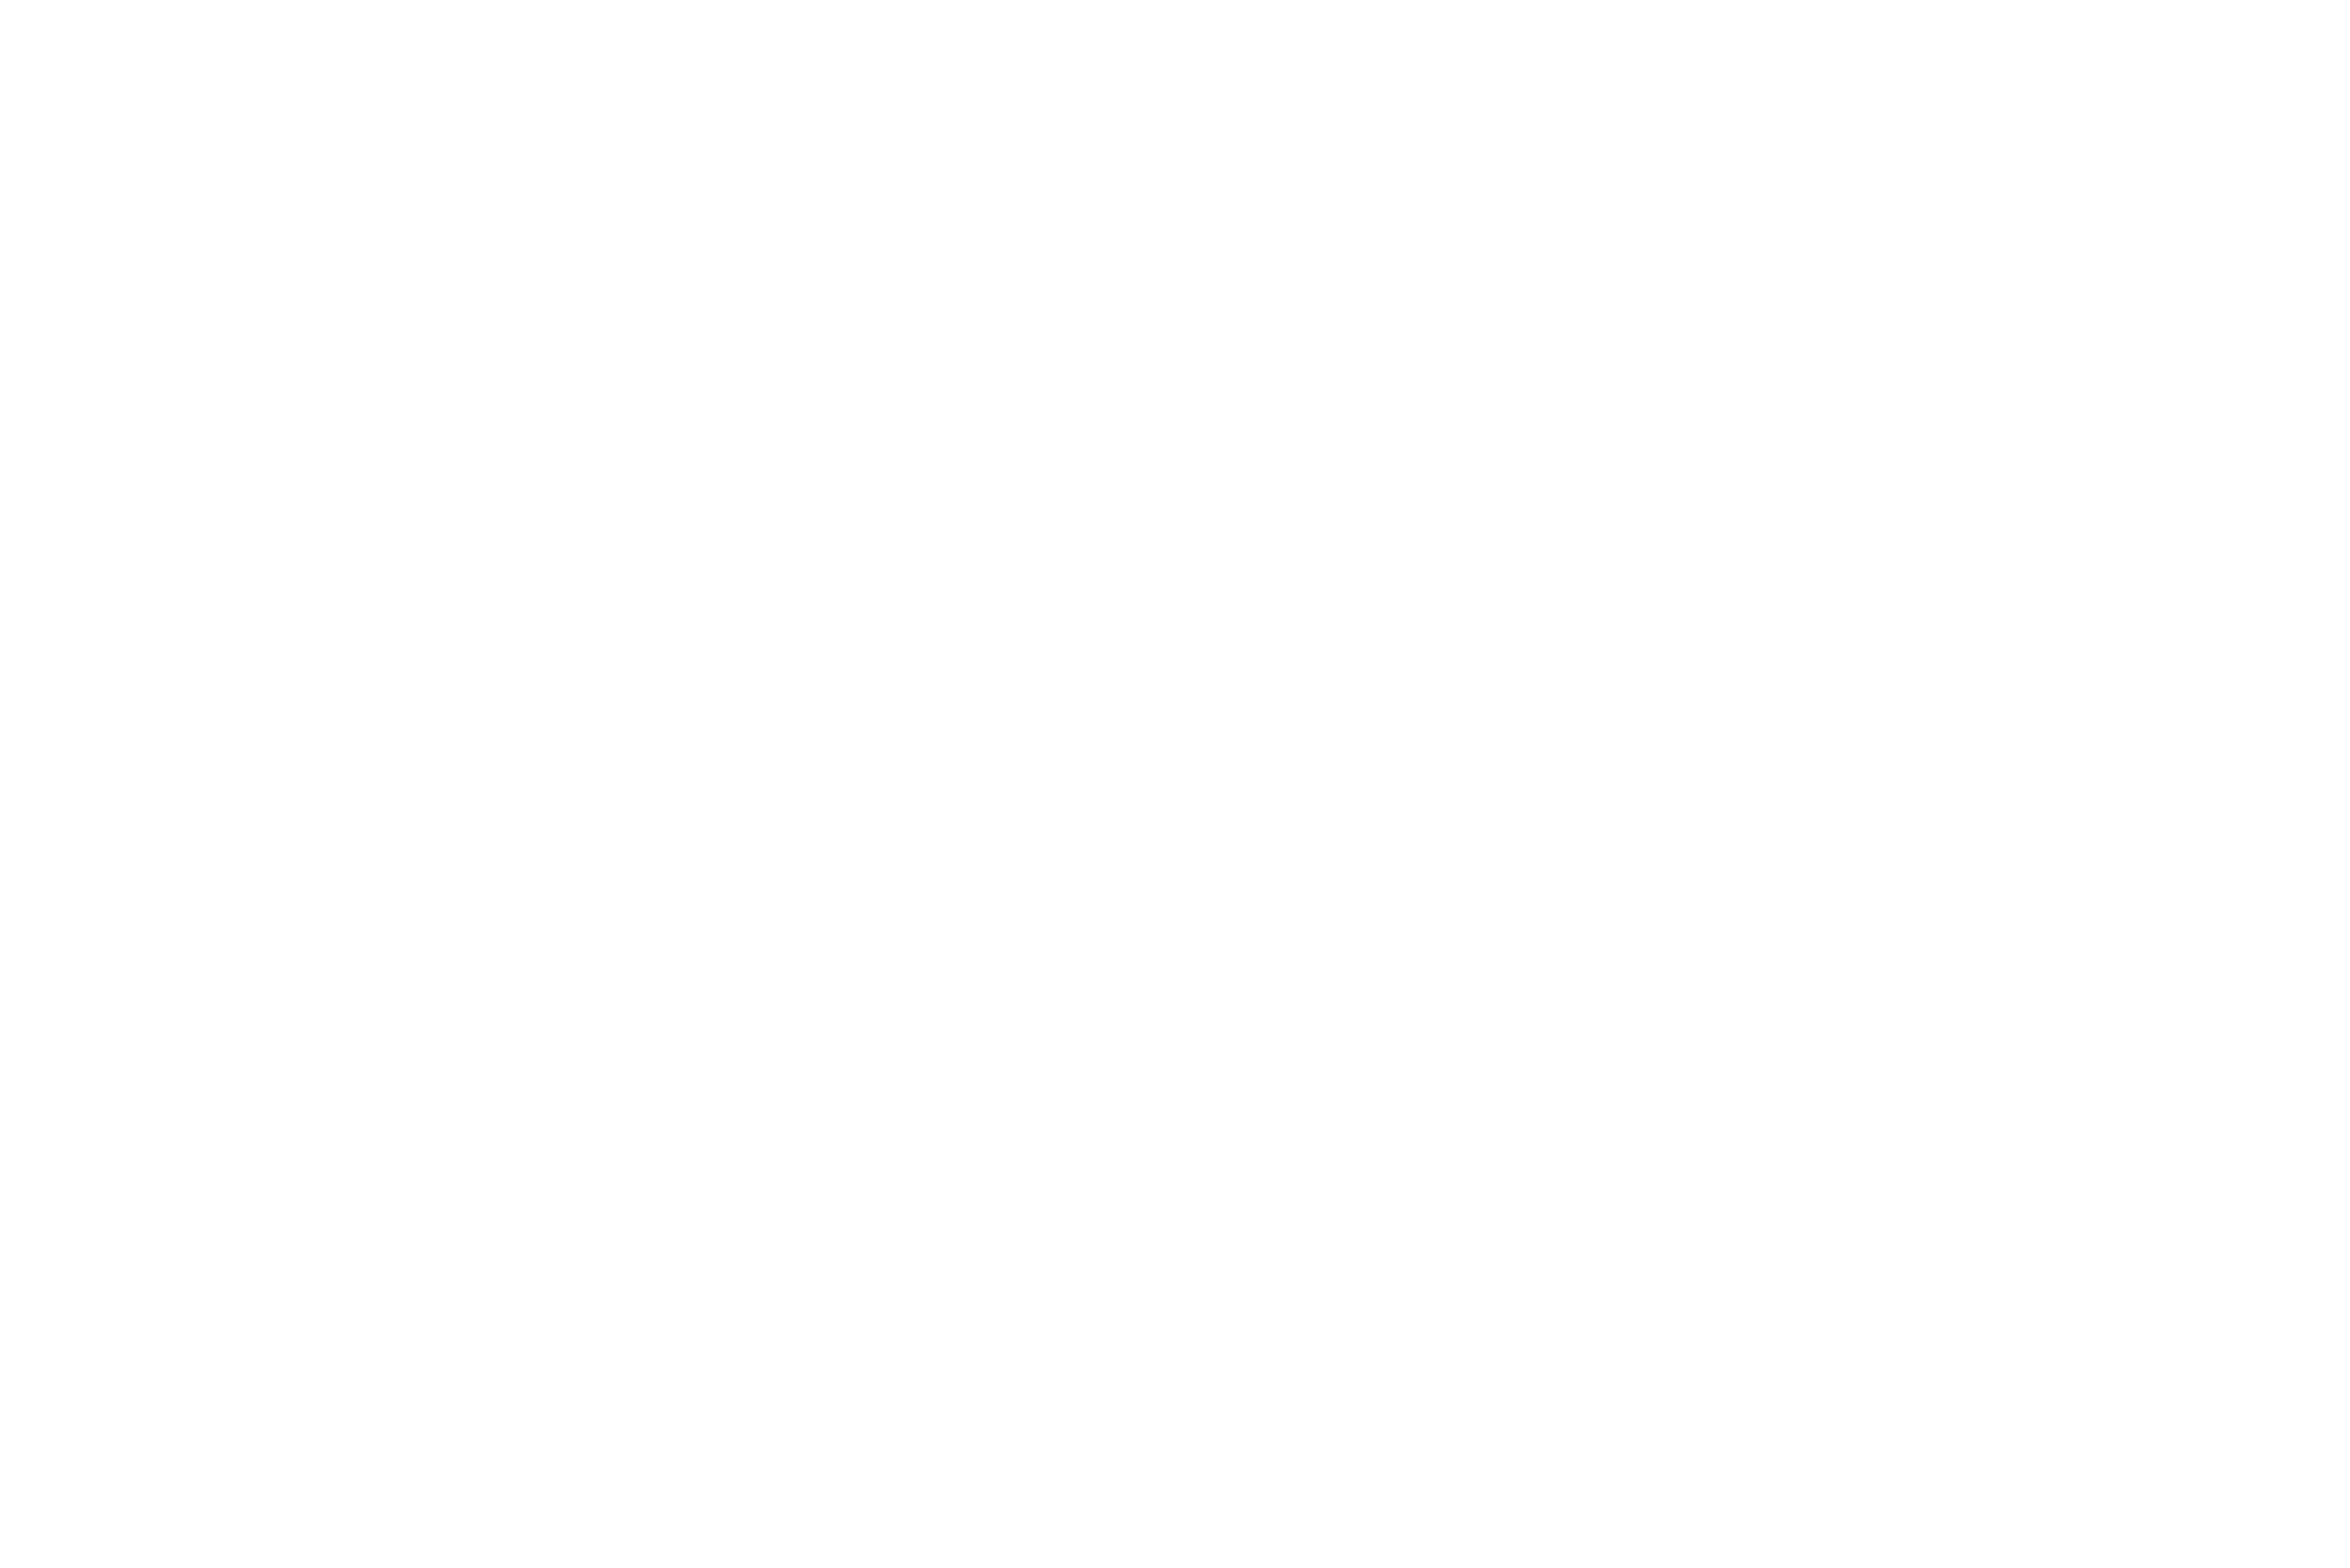 Centennial Baptist School